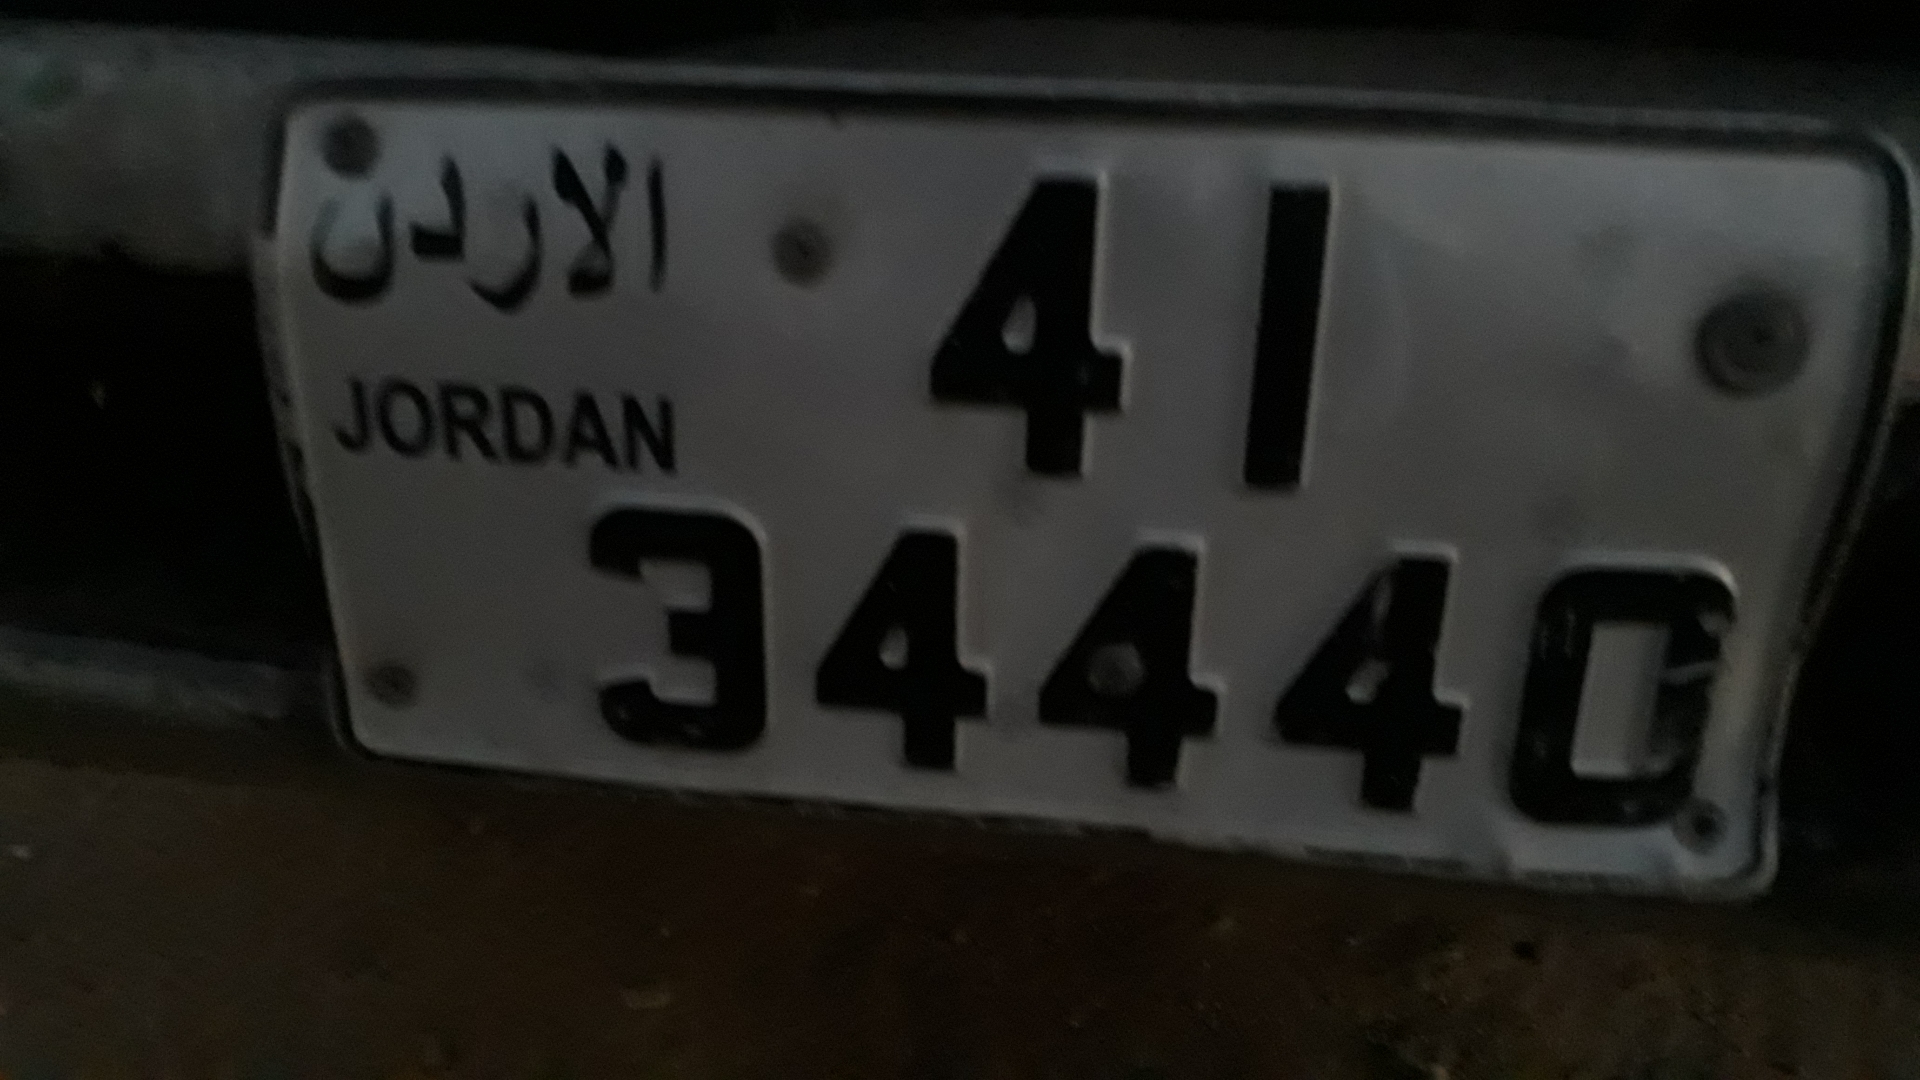 أرقام سيارات مميّزة للبيع في لبنان. واتسأب على الرقم 0096170362405-  رقم اللبيع لا تنسَ أنك...